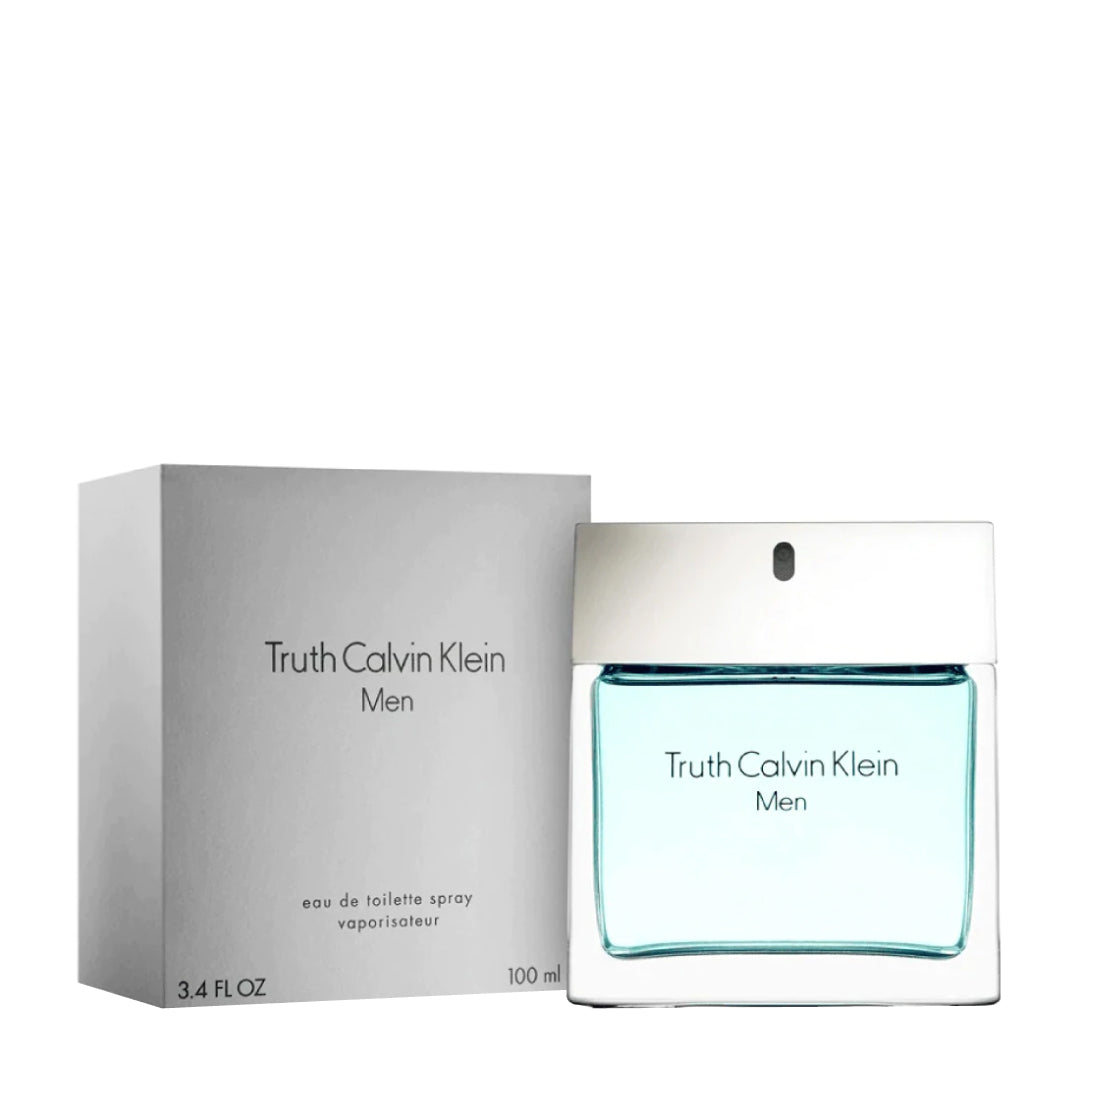 Klein De Eau Calvin Ck By Truth Perfume 3.4 oz Spray Toilette Men For – Plus Outlet